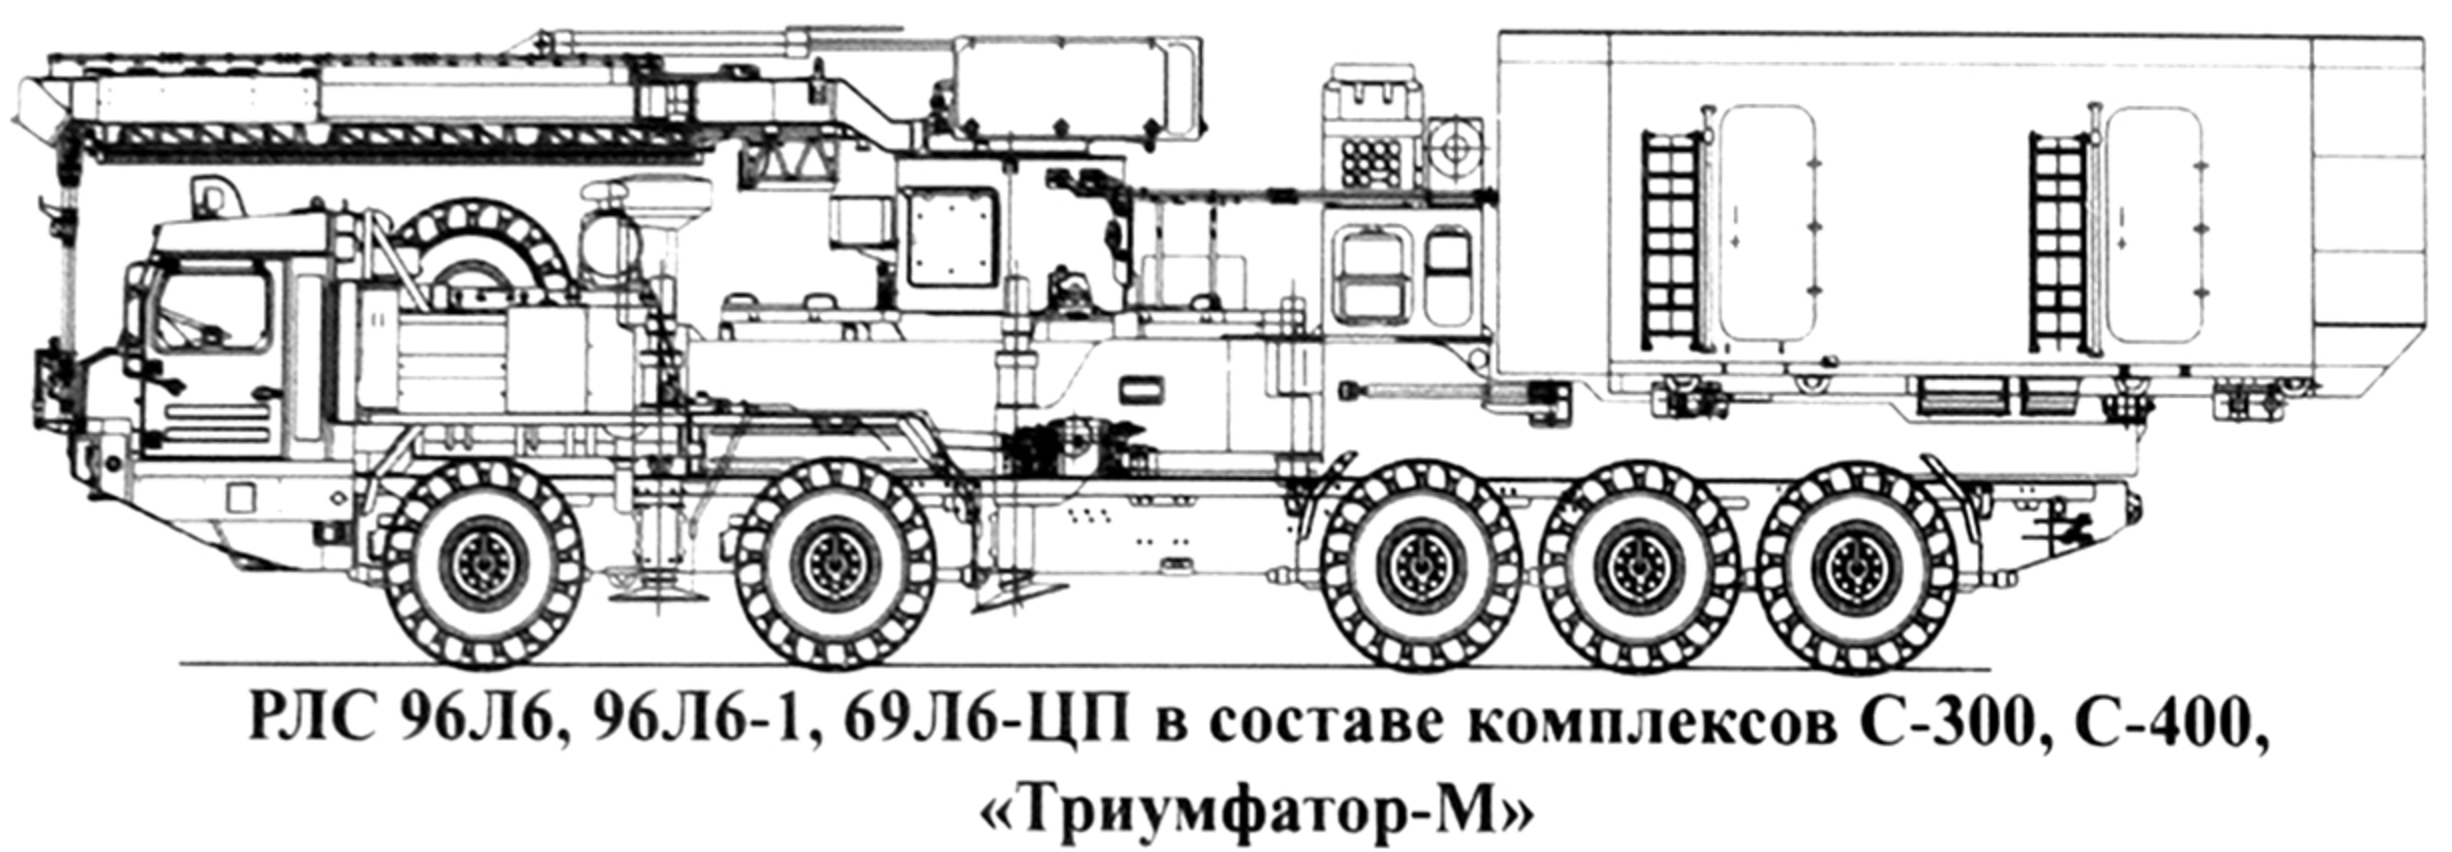 Missile automoteur Almaz-Antey S-500 Triumfator M...